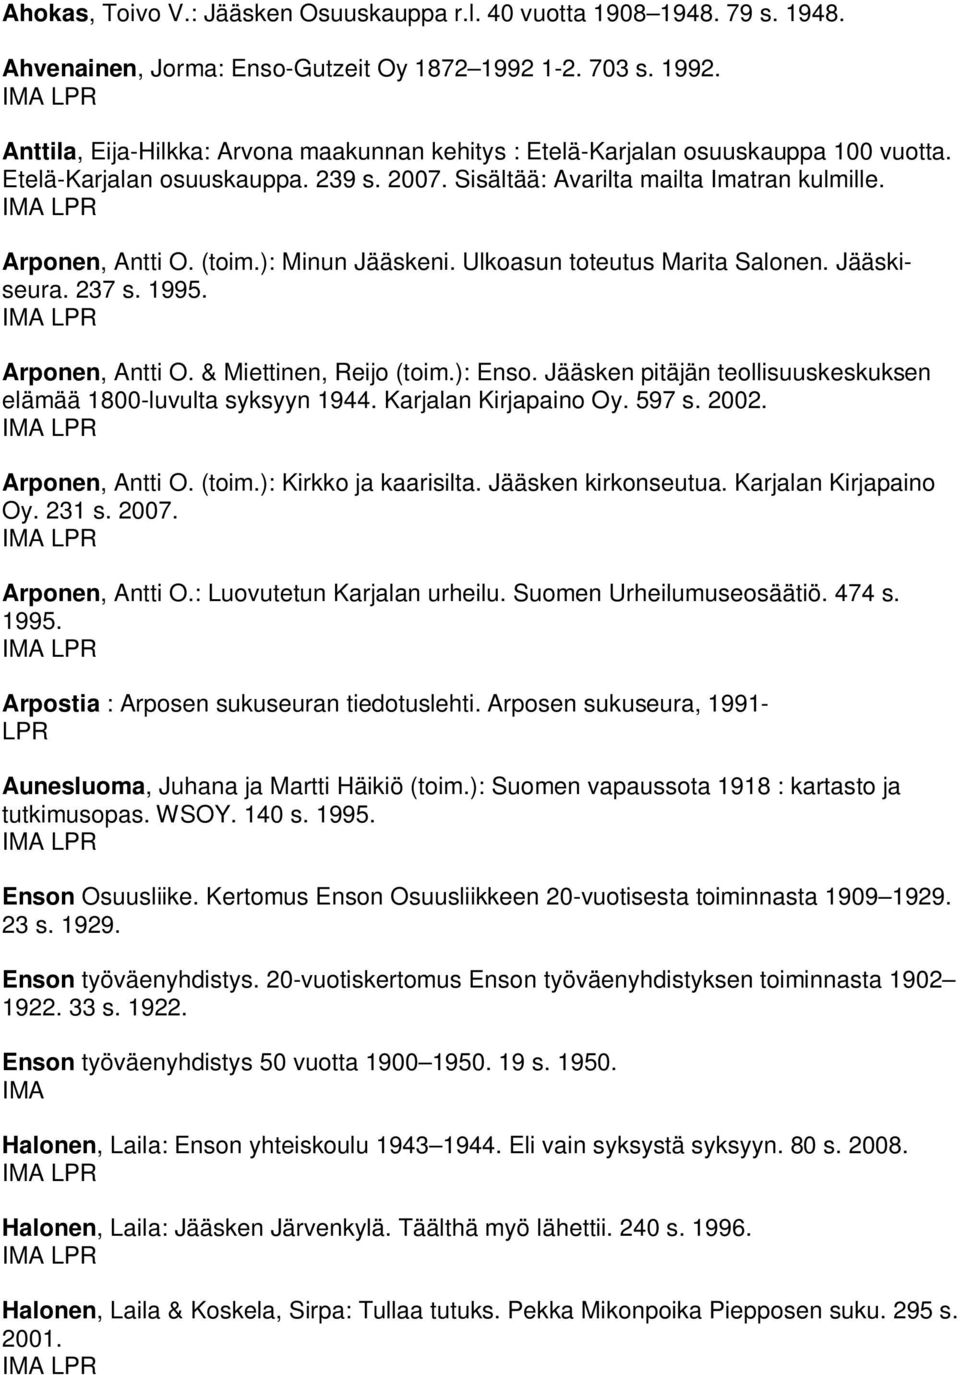 Arponen, Antti O. (toim.): Minun Jääskeni. Ulkoasun toteutus Marita Salonen. Jääskiseura. 237 s. 1995. Arponen, Antti O. & Miettinen, Reijo (toim.): Enso.